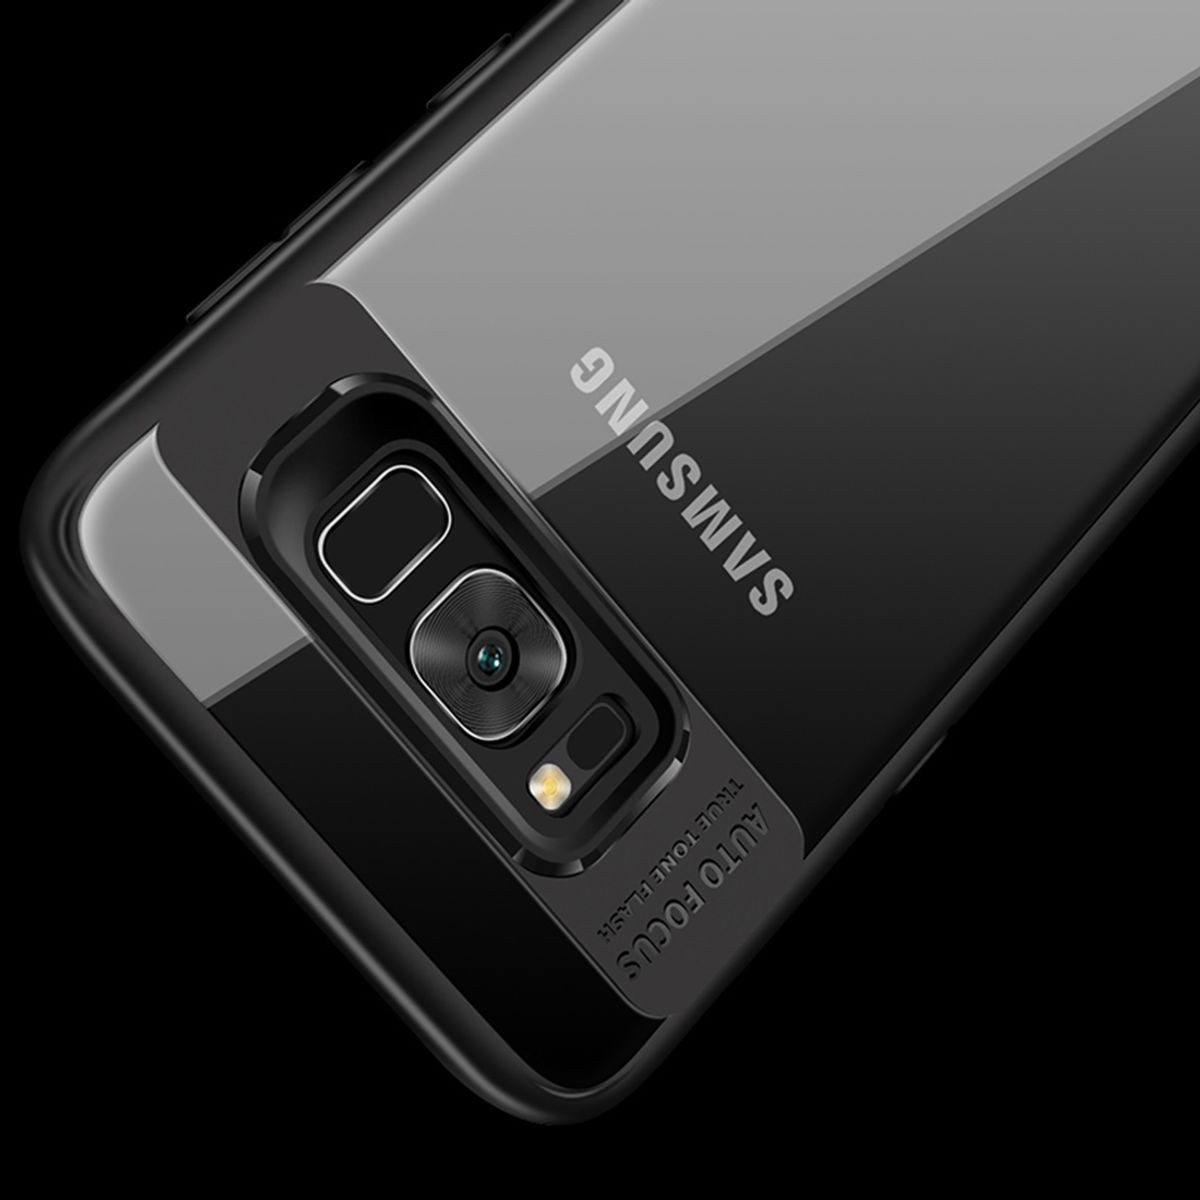 König Design Handyhülle Samsung Galaxy Note 8, Samsung Galaxy Note 8 Handyhülle Backcover Schwarz